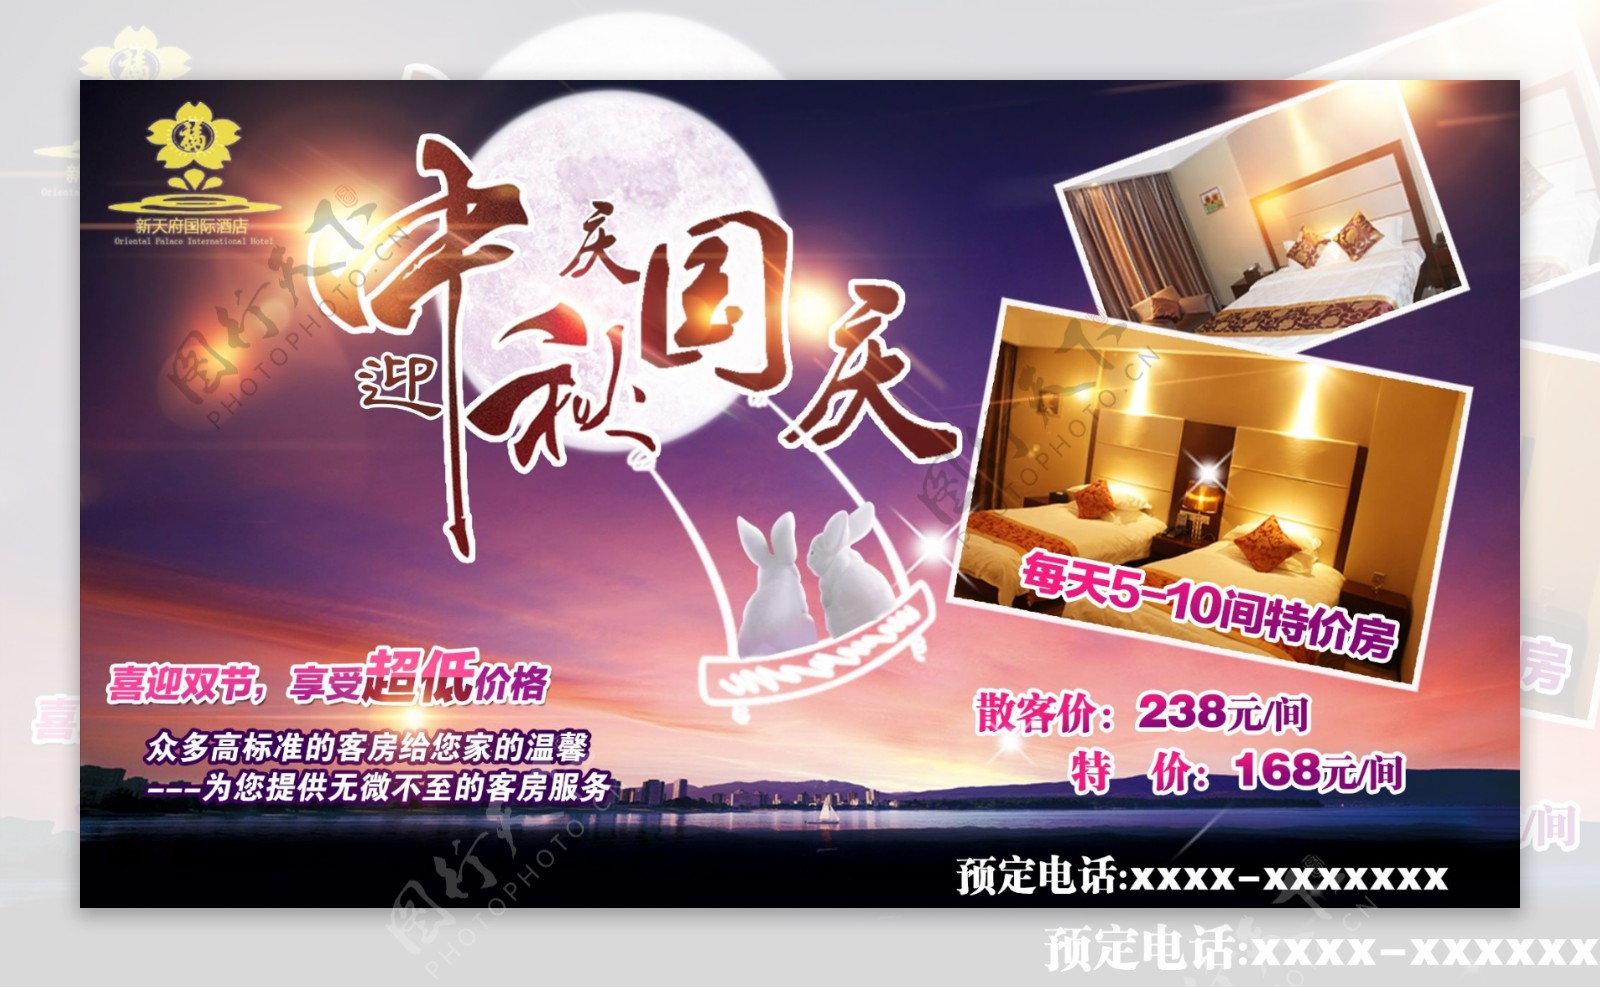 酒店中秋国庆促销活动LED大屏宣传海报